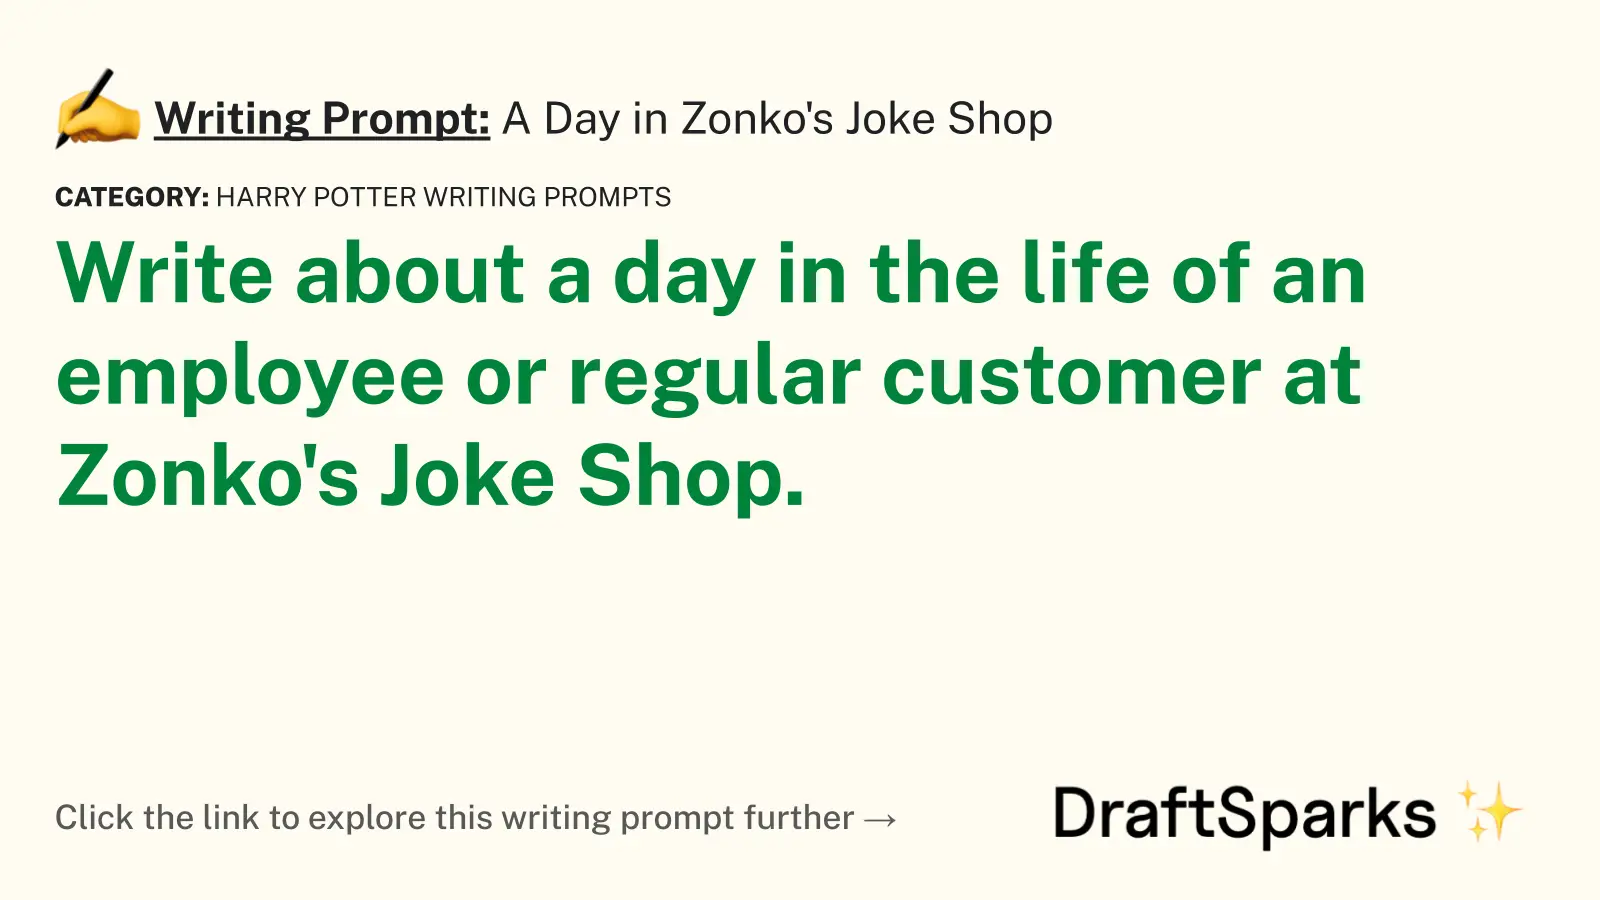 A Day in Zonko’s Joke Shop